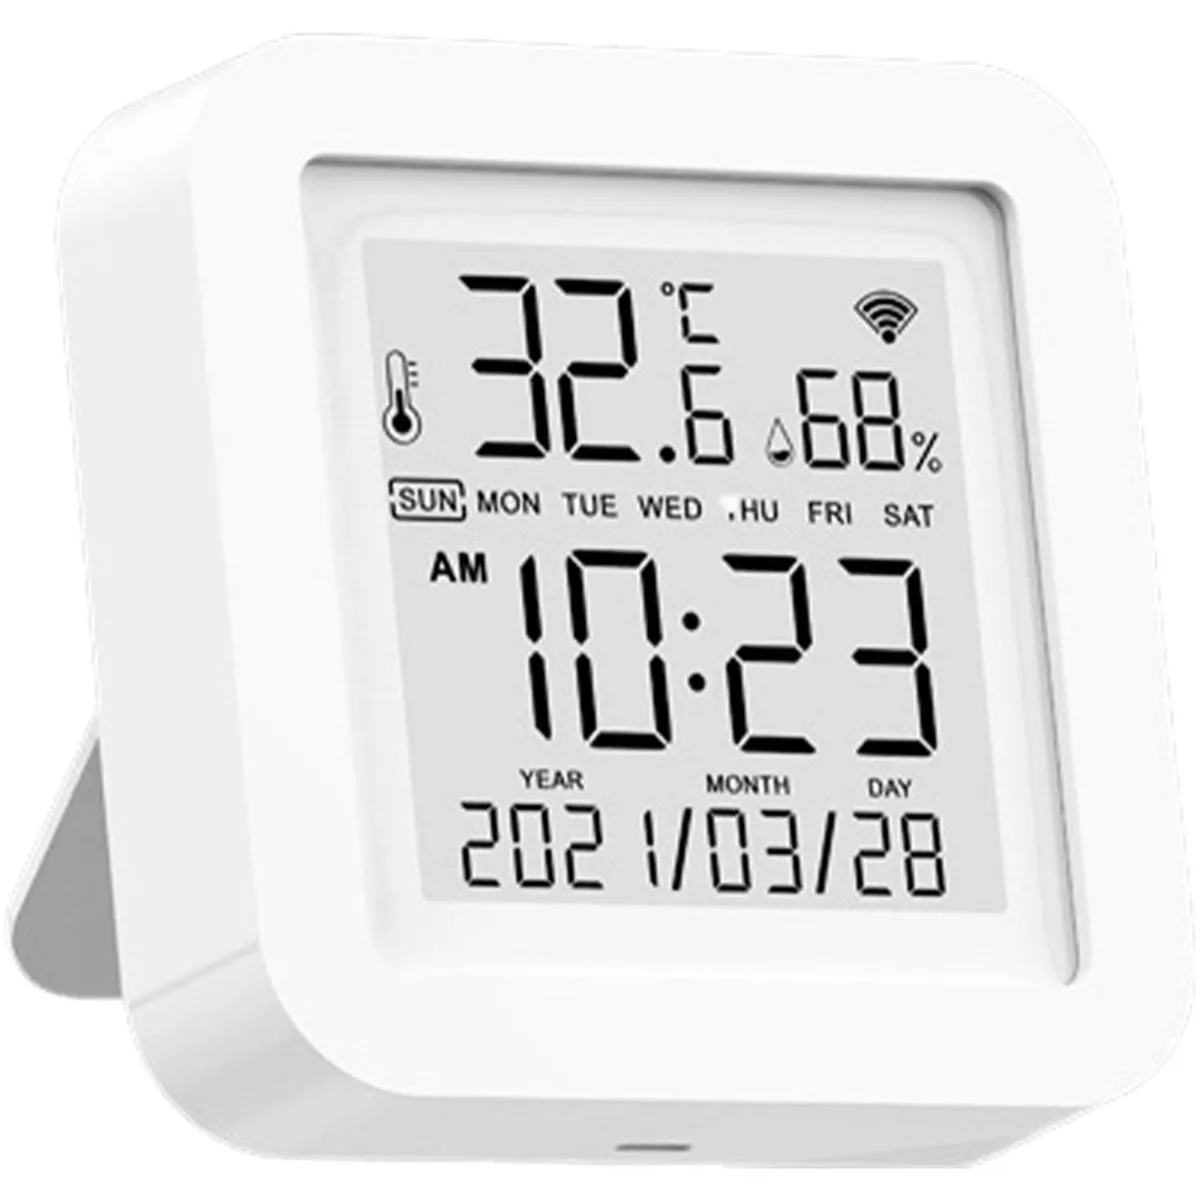 

Мини-термометр с ЖК-дисплеем, цифровой Комнатный гигрометр с датчиком температуры и влажности, инструмент для измерения температуры